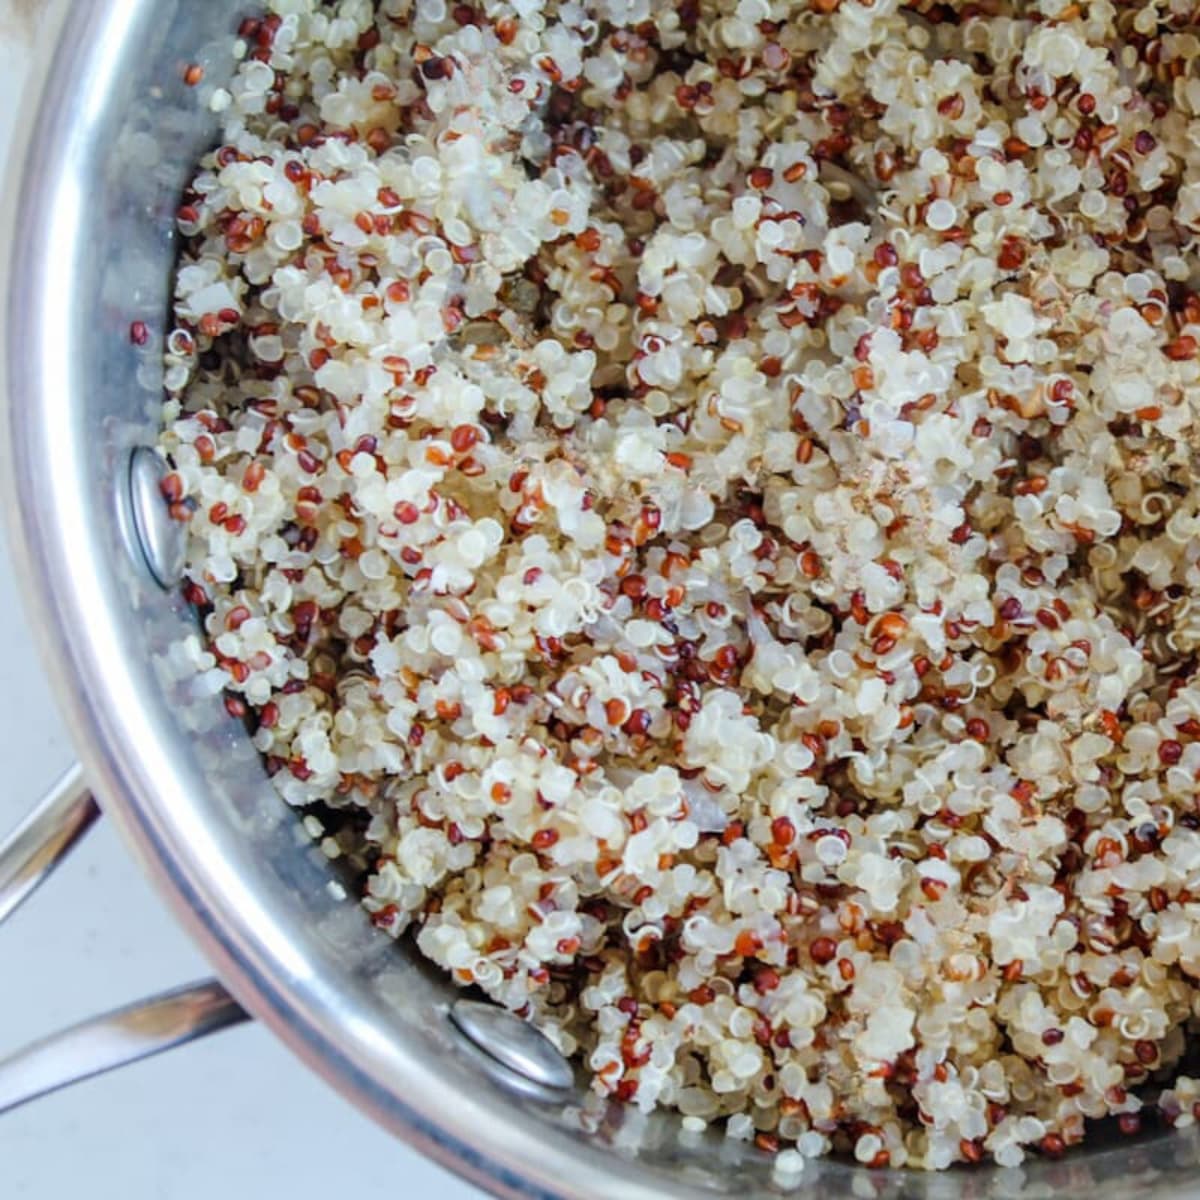 A pot of cooked quinoa.